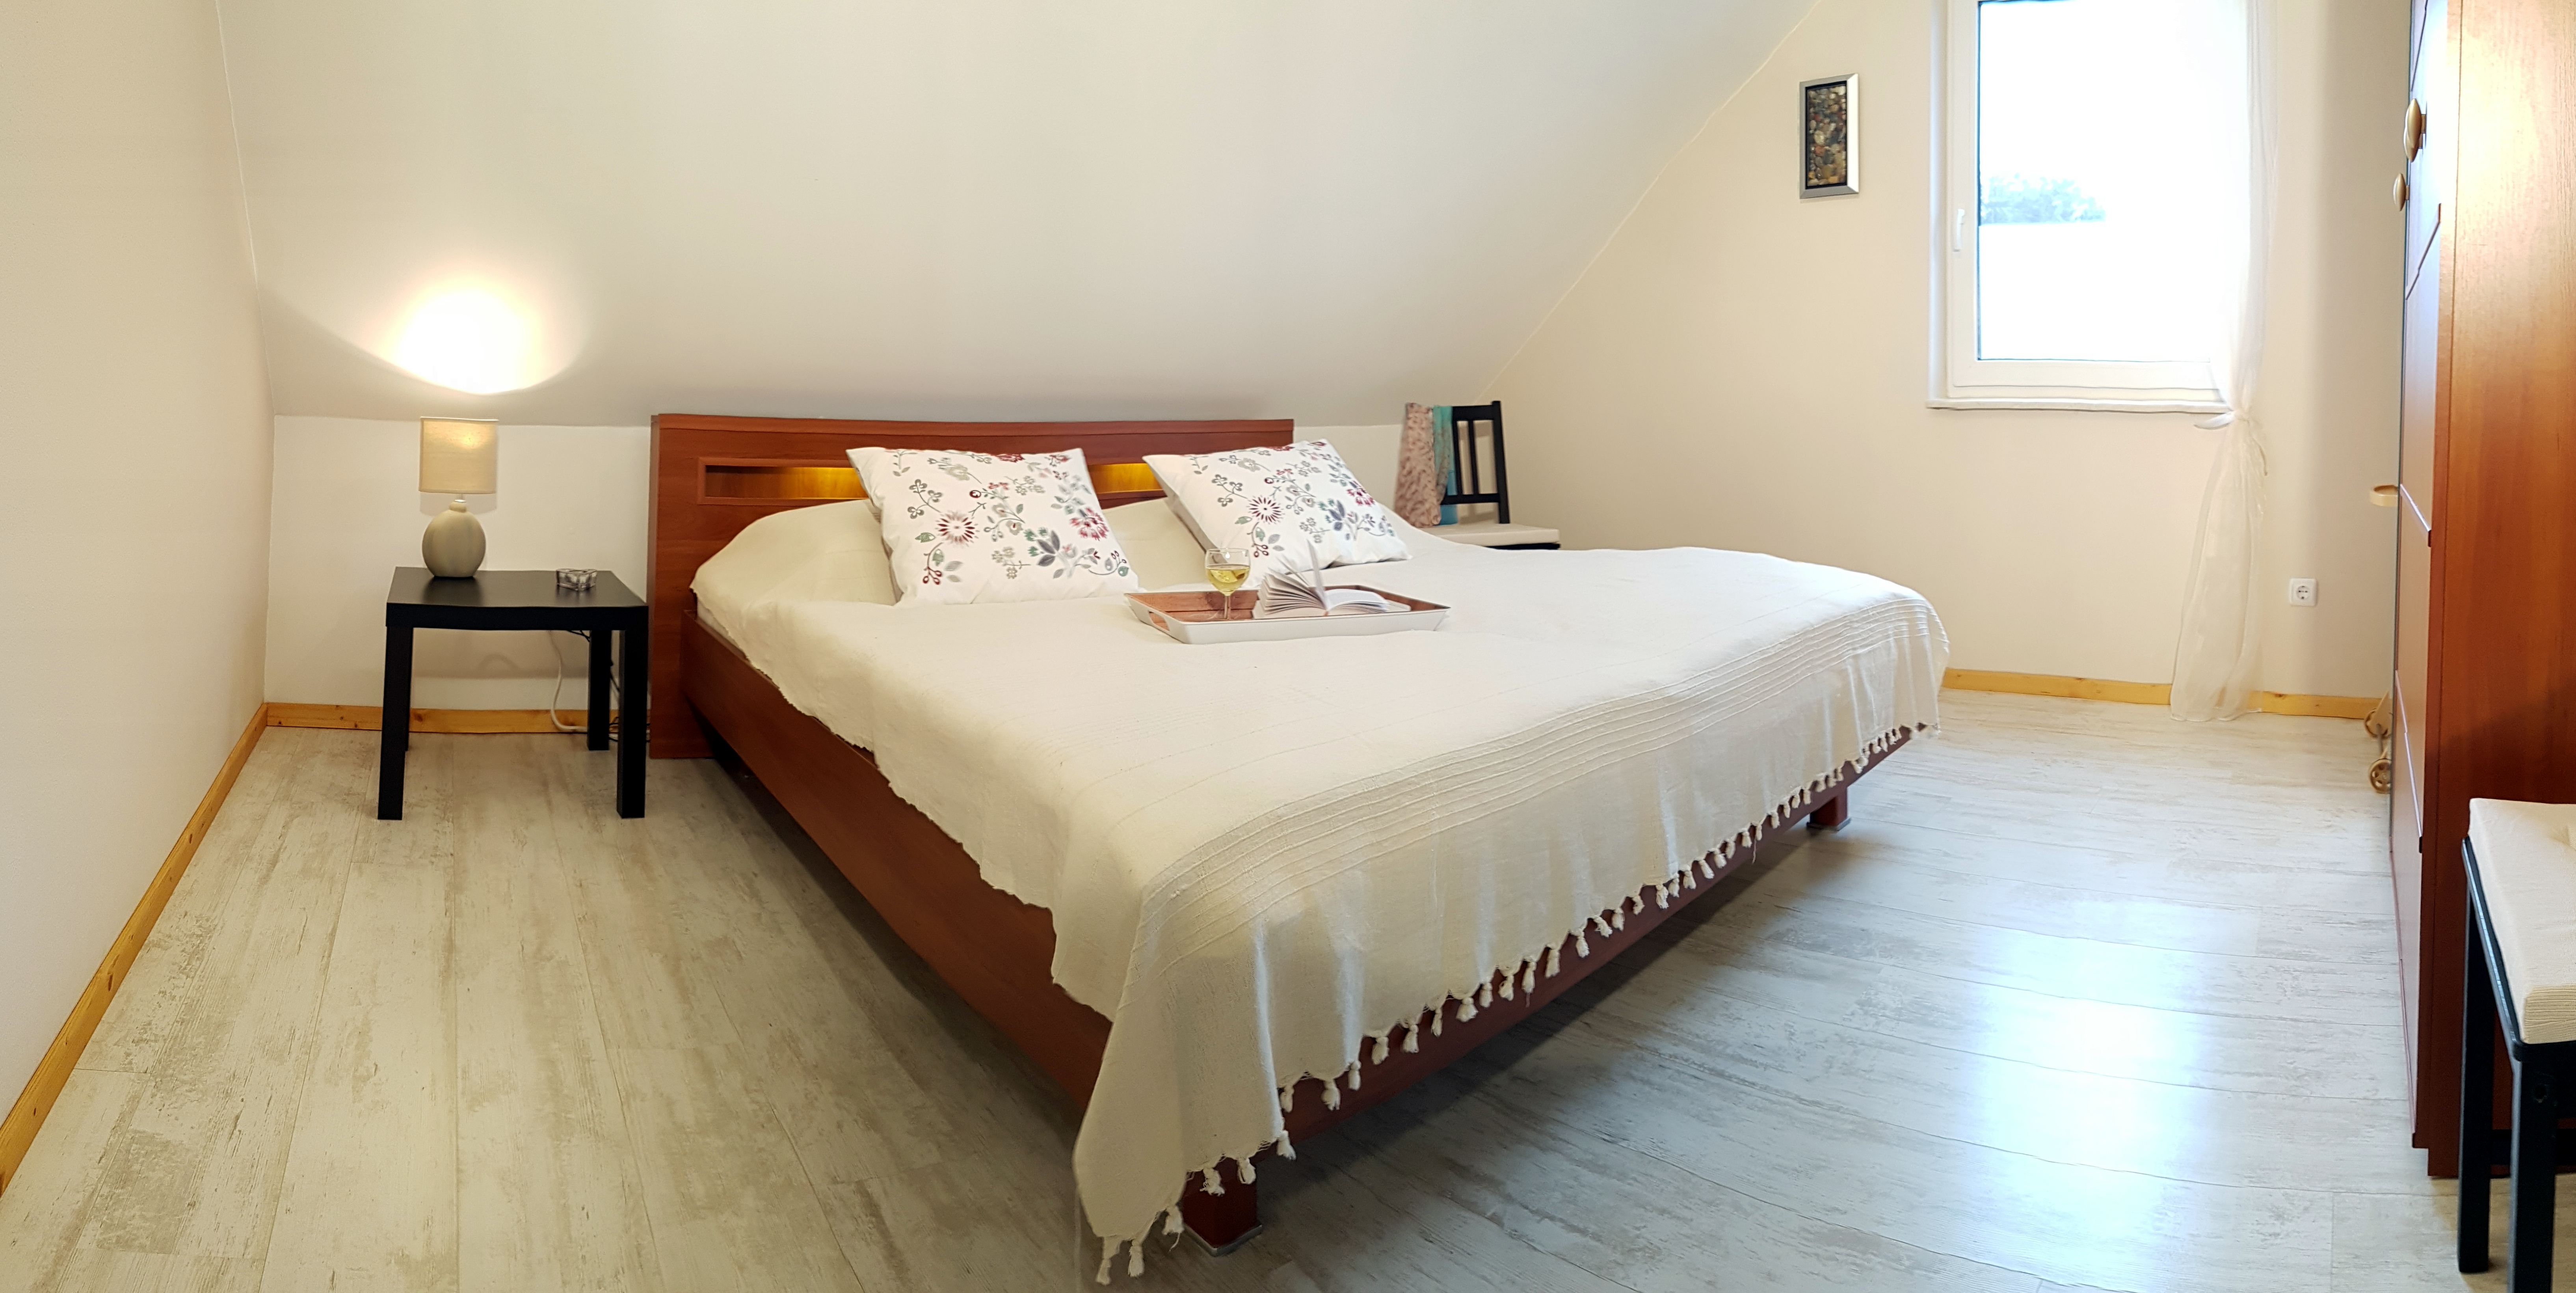 Schlafzimmer mit Doppelbett nach Renovierung Ferienwohnung Ganzlin bei Plau am See Mecklenburgische Seenplatte